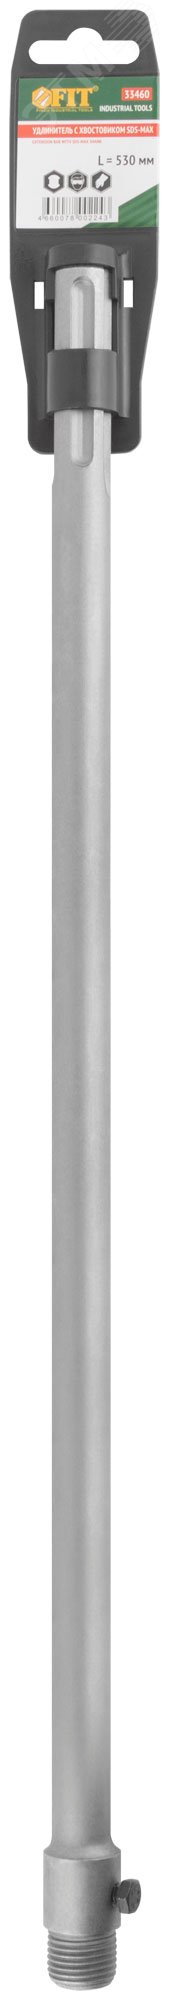 Удлинитель с хвостовиком SDS-MAX для коронок по бетону, резьба М22, длина 530 мм 33460 FIT - превью 3